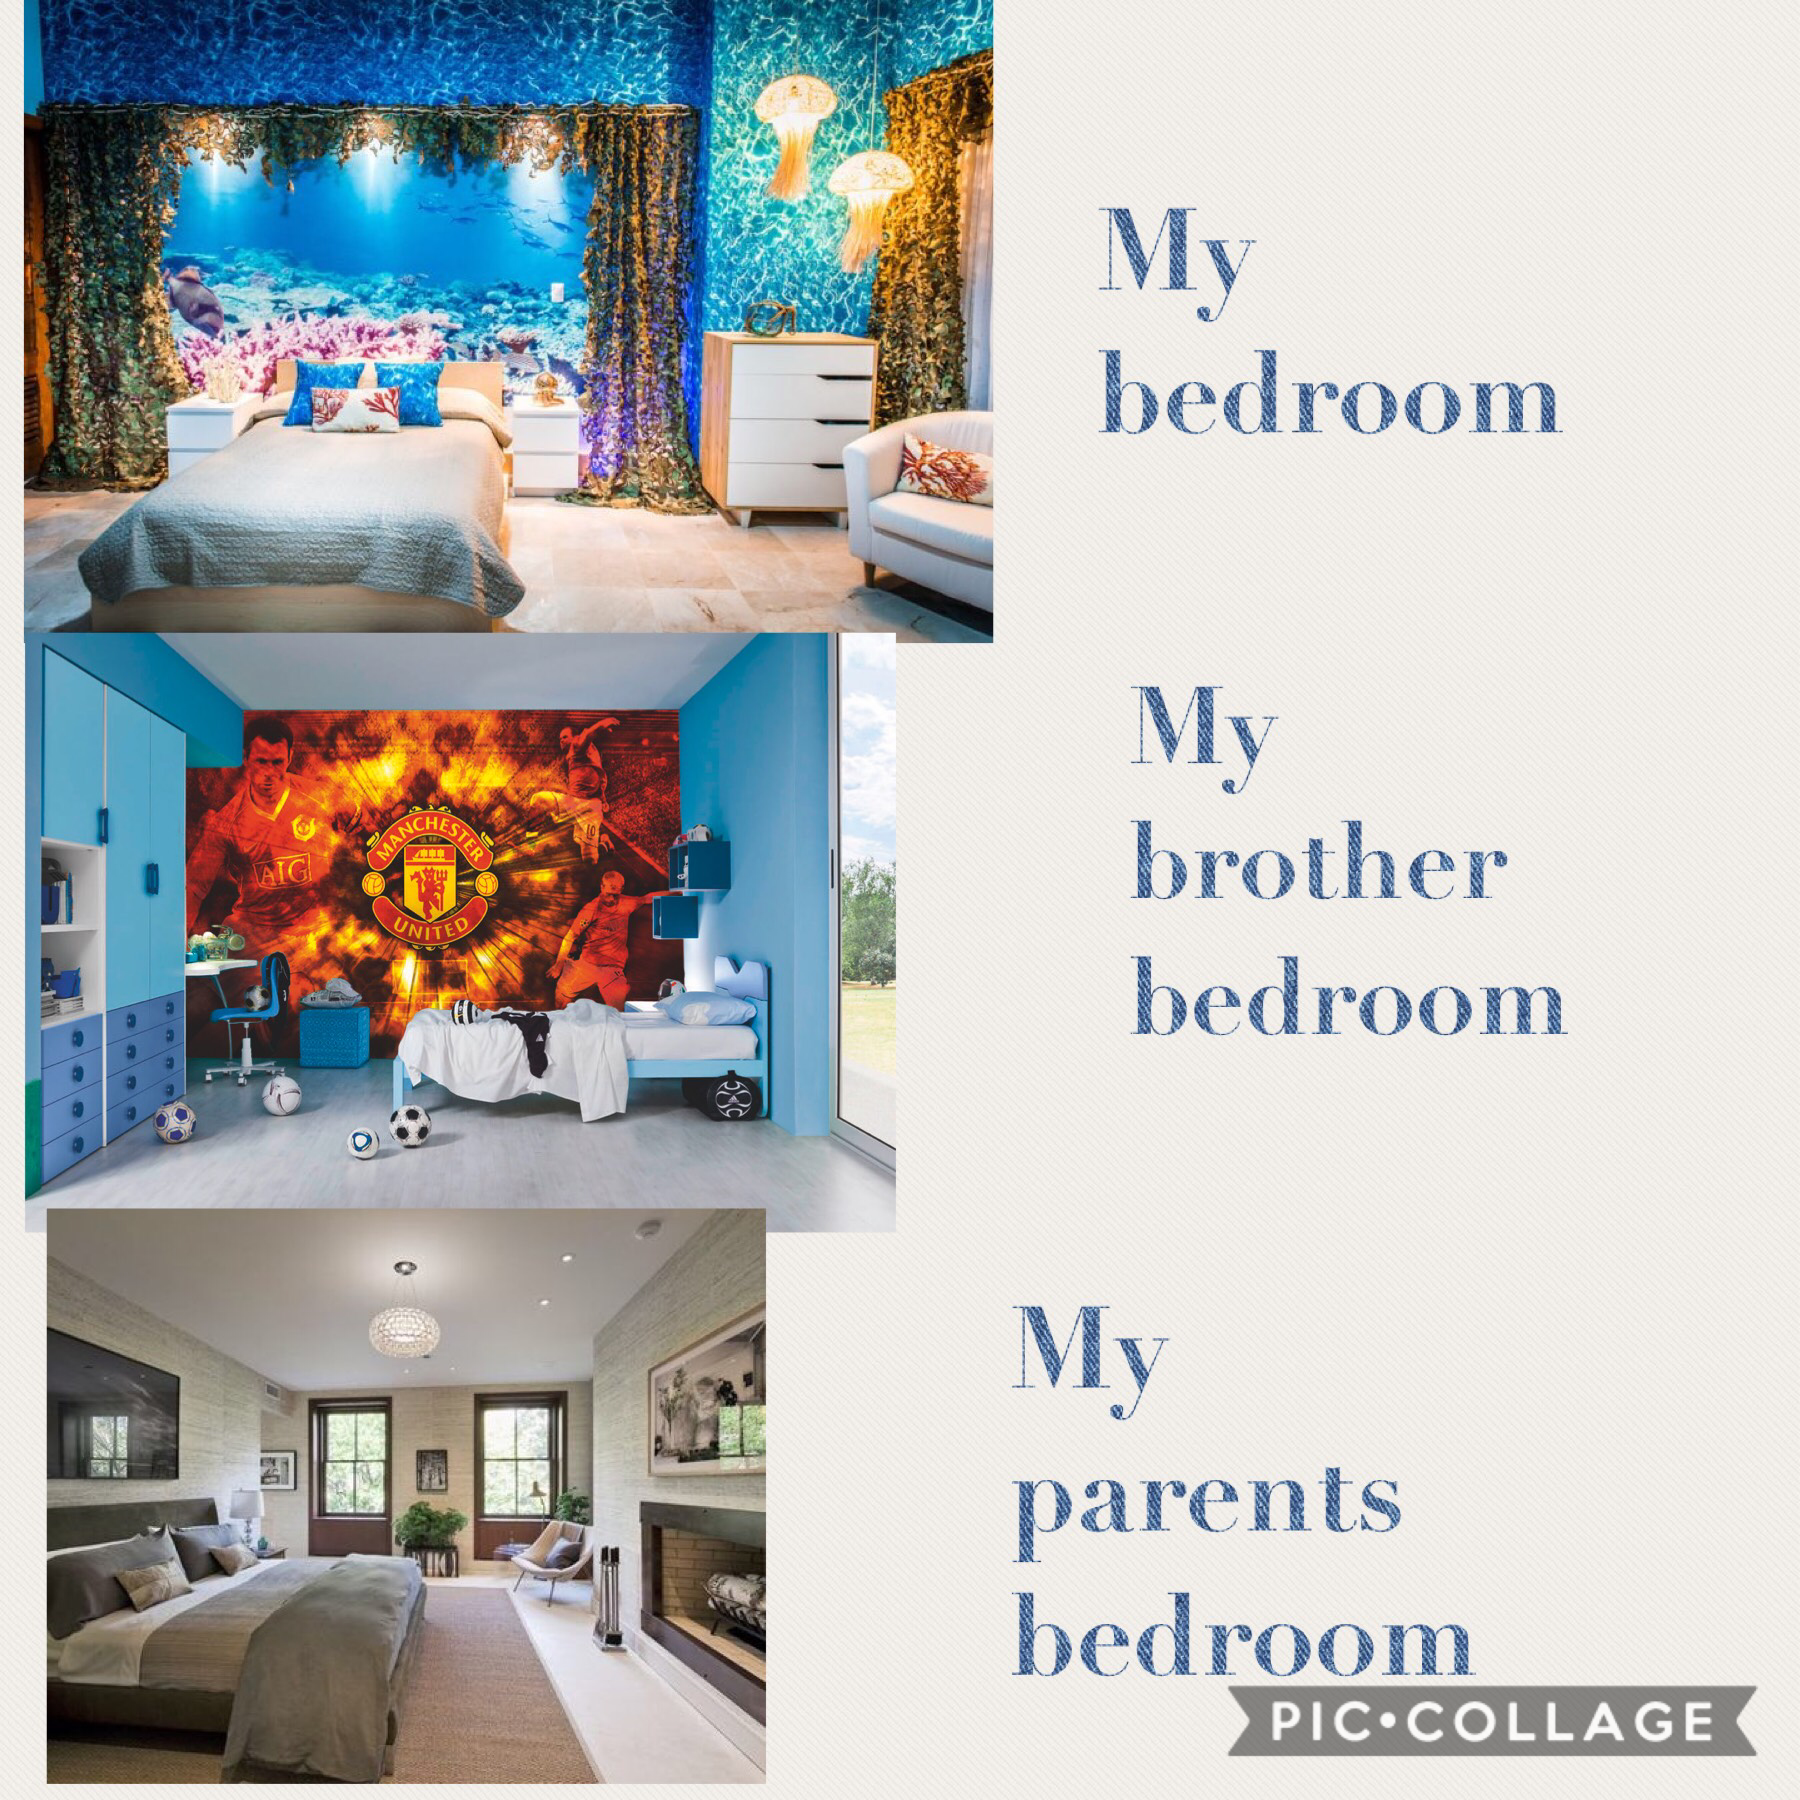 Who best bedroom? 